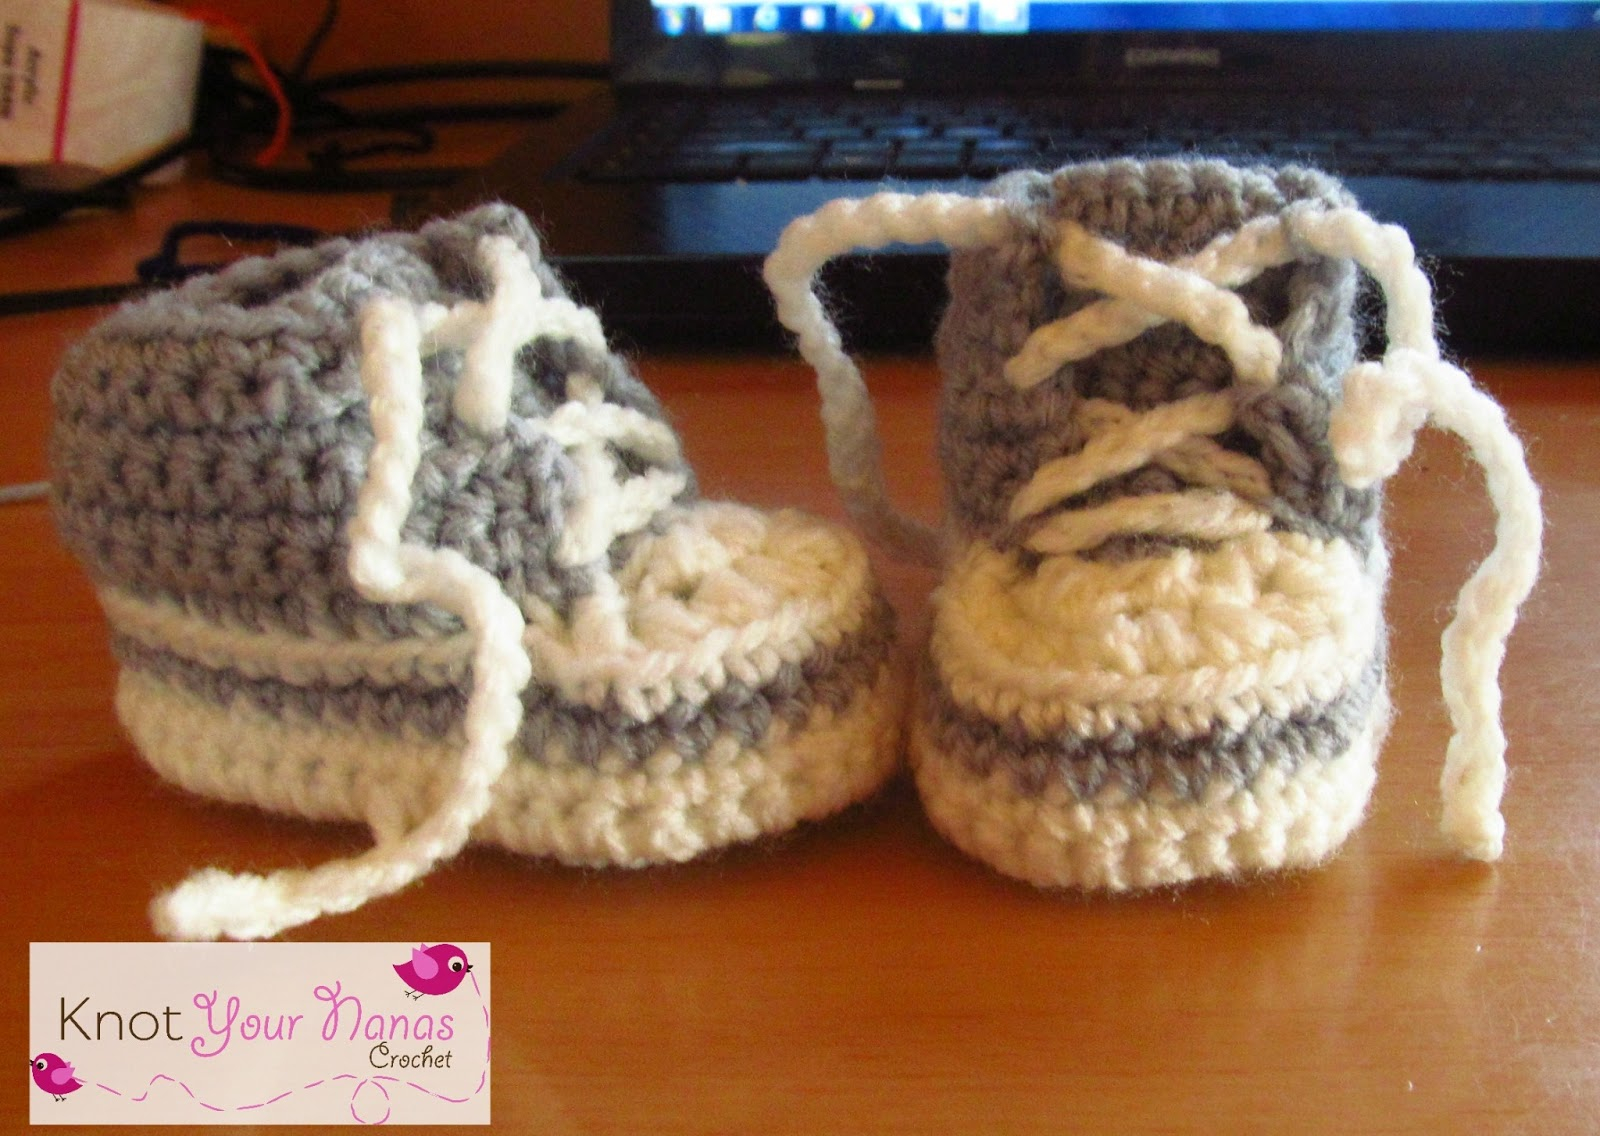 Converse Crochet Pattern Knot Your Nanas Crochet Crochet Converse Newborn High Tops